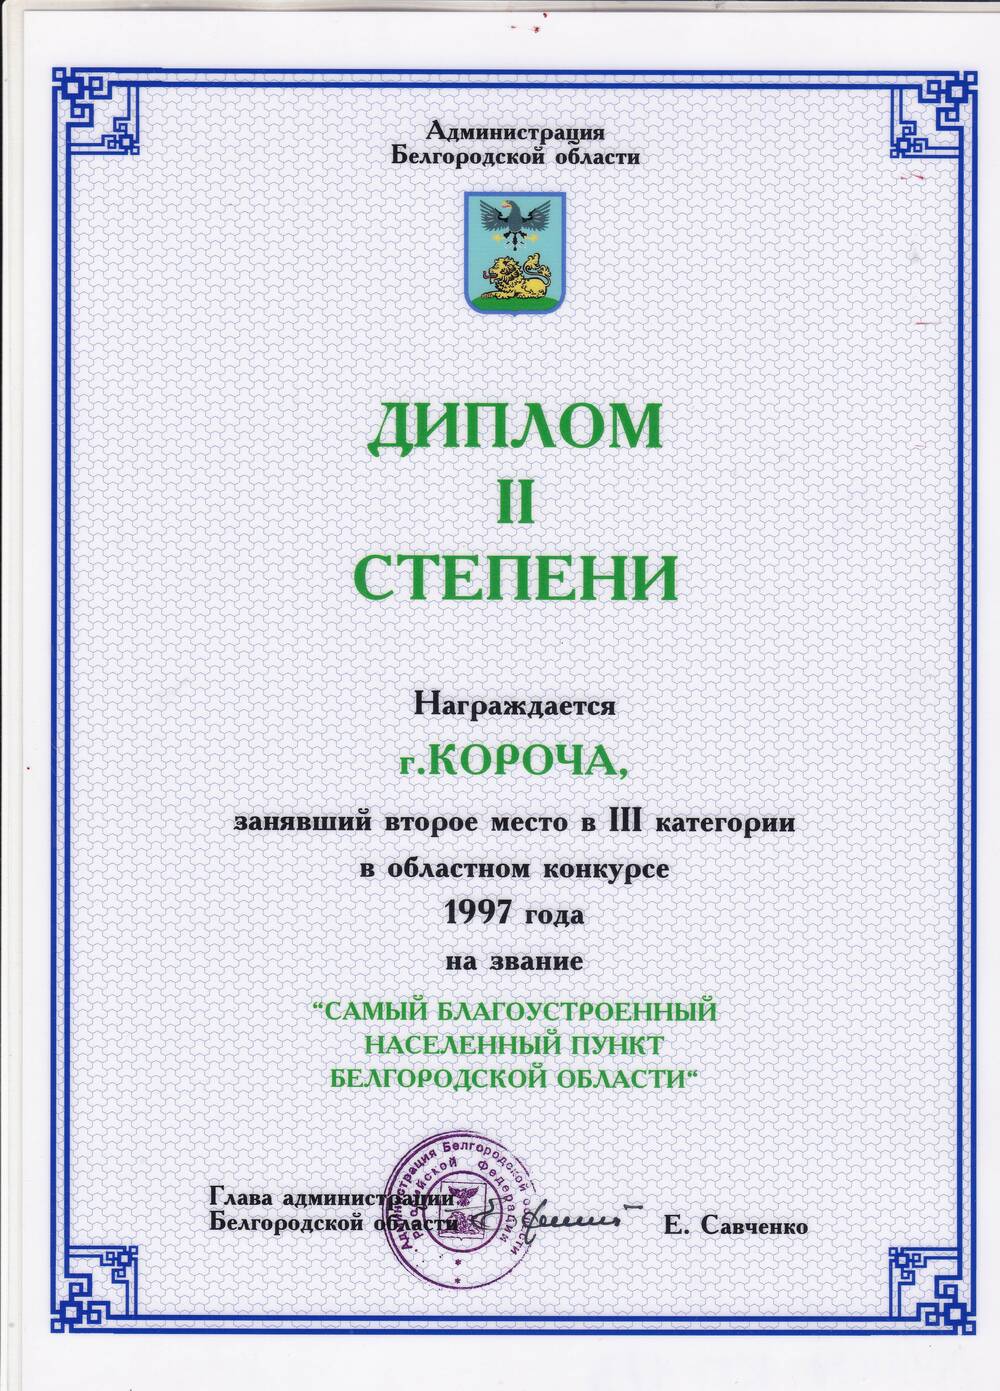 Диплом 3 степени. Награждается город Короча занявший 2-е место в 3-й категории в областном конкурсе 1997 г. Самый благоустроенный населённый пункт Белгородской области.